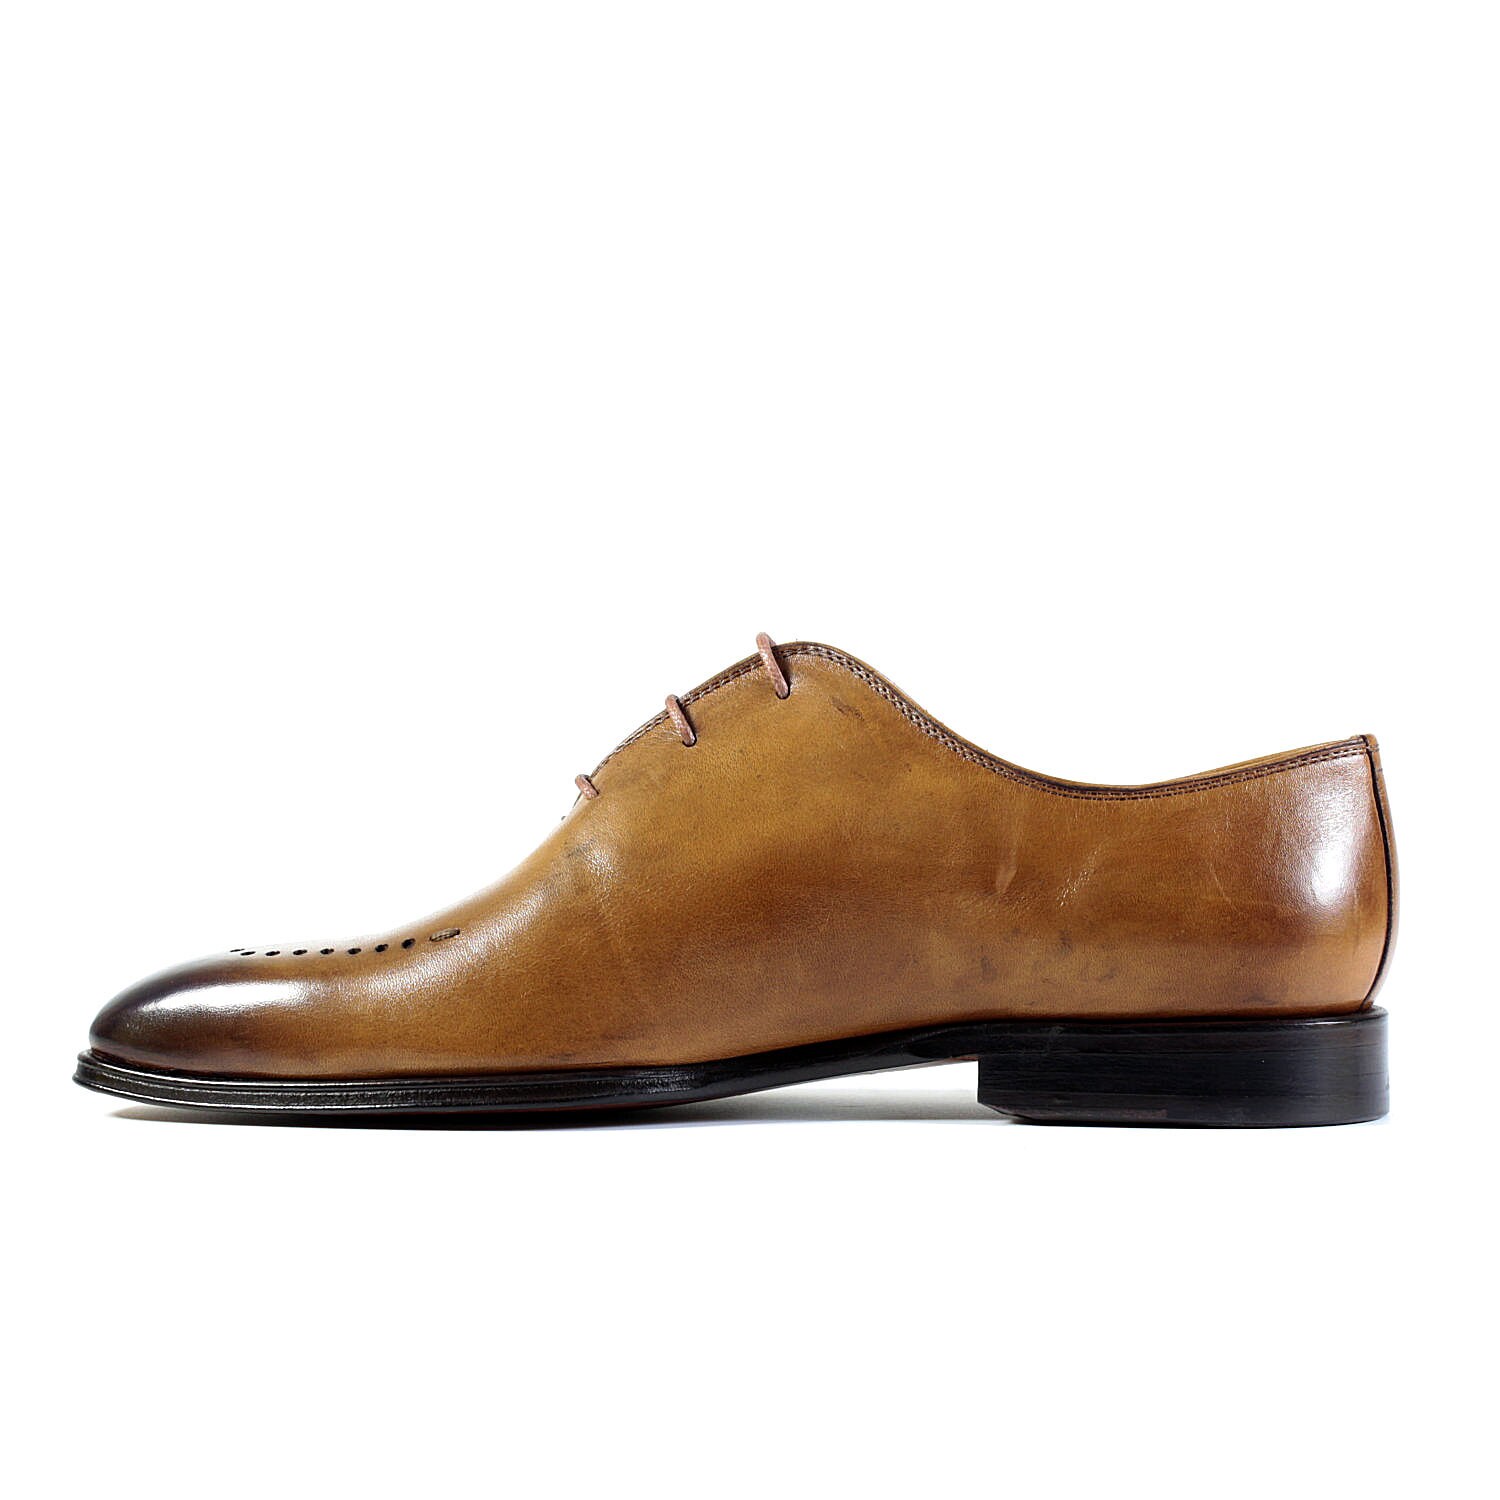 Brouge Dress Shoes Wholecut Shoes Classic Leather Shoes Men - Etsy